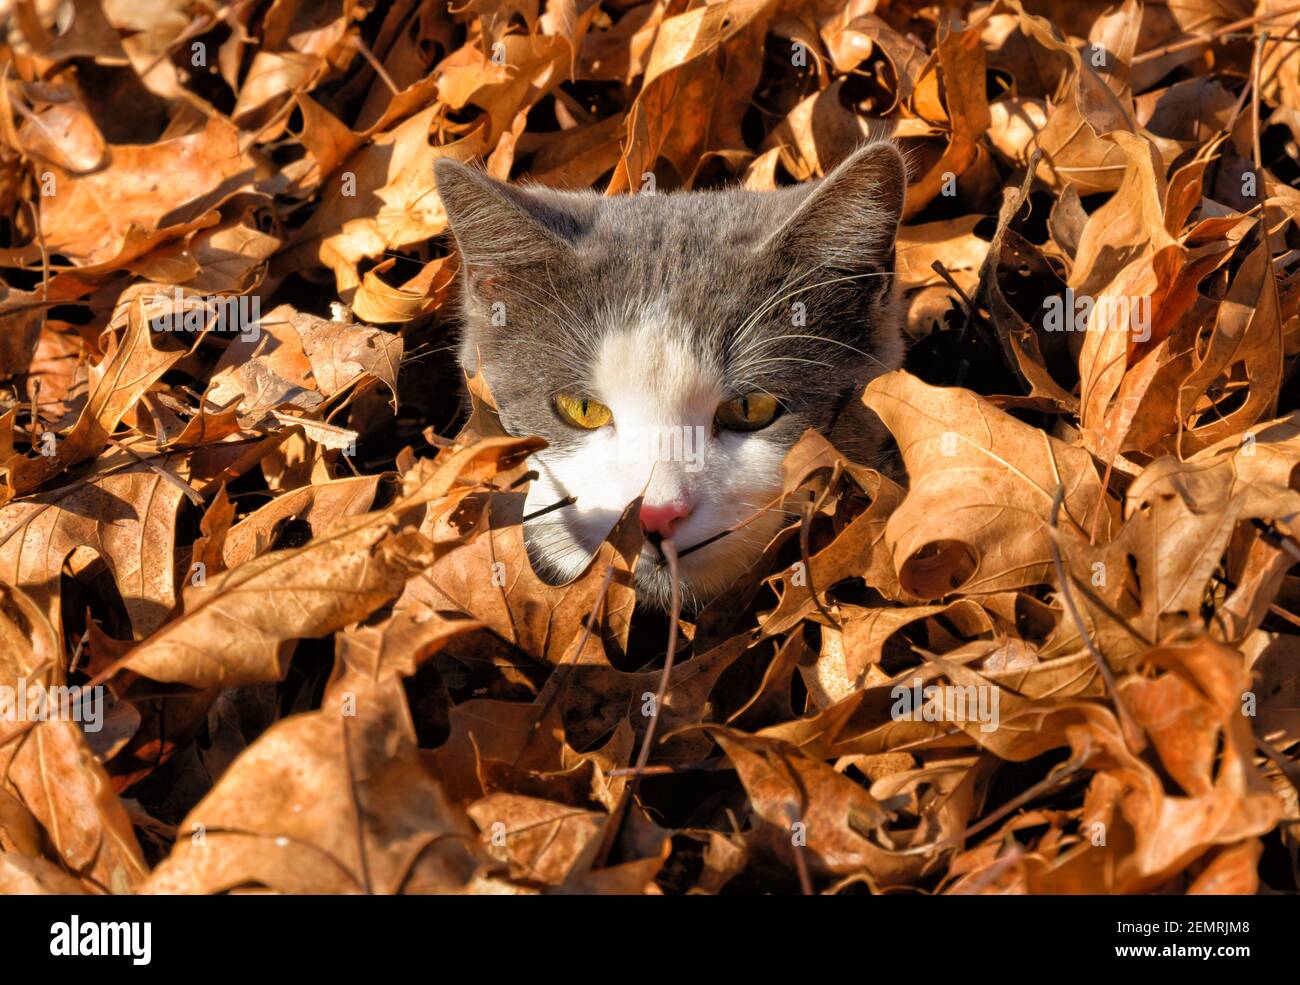 Giovane gatto grigio e bianco di tuxedo che sbirca da un mucchio di foglie cadute, con solo la sua testa sopra di loro Foto Stock